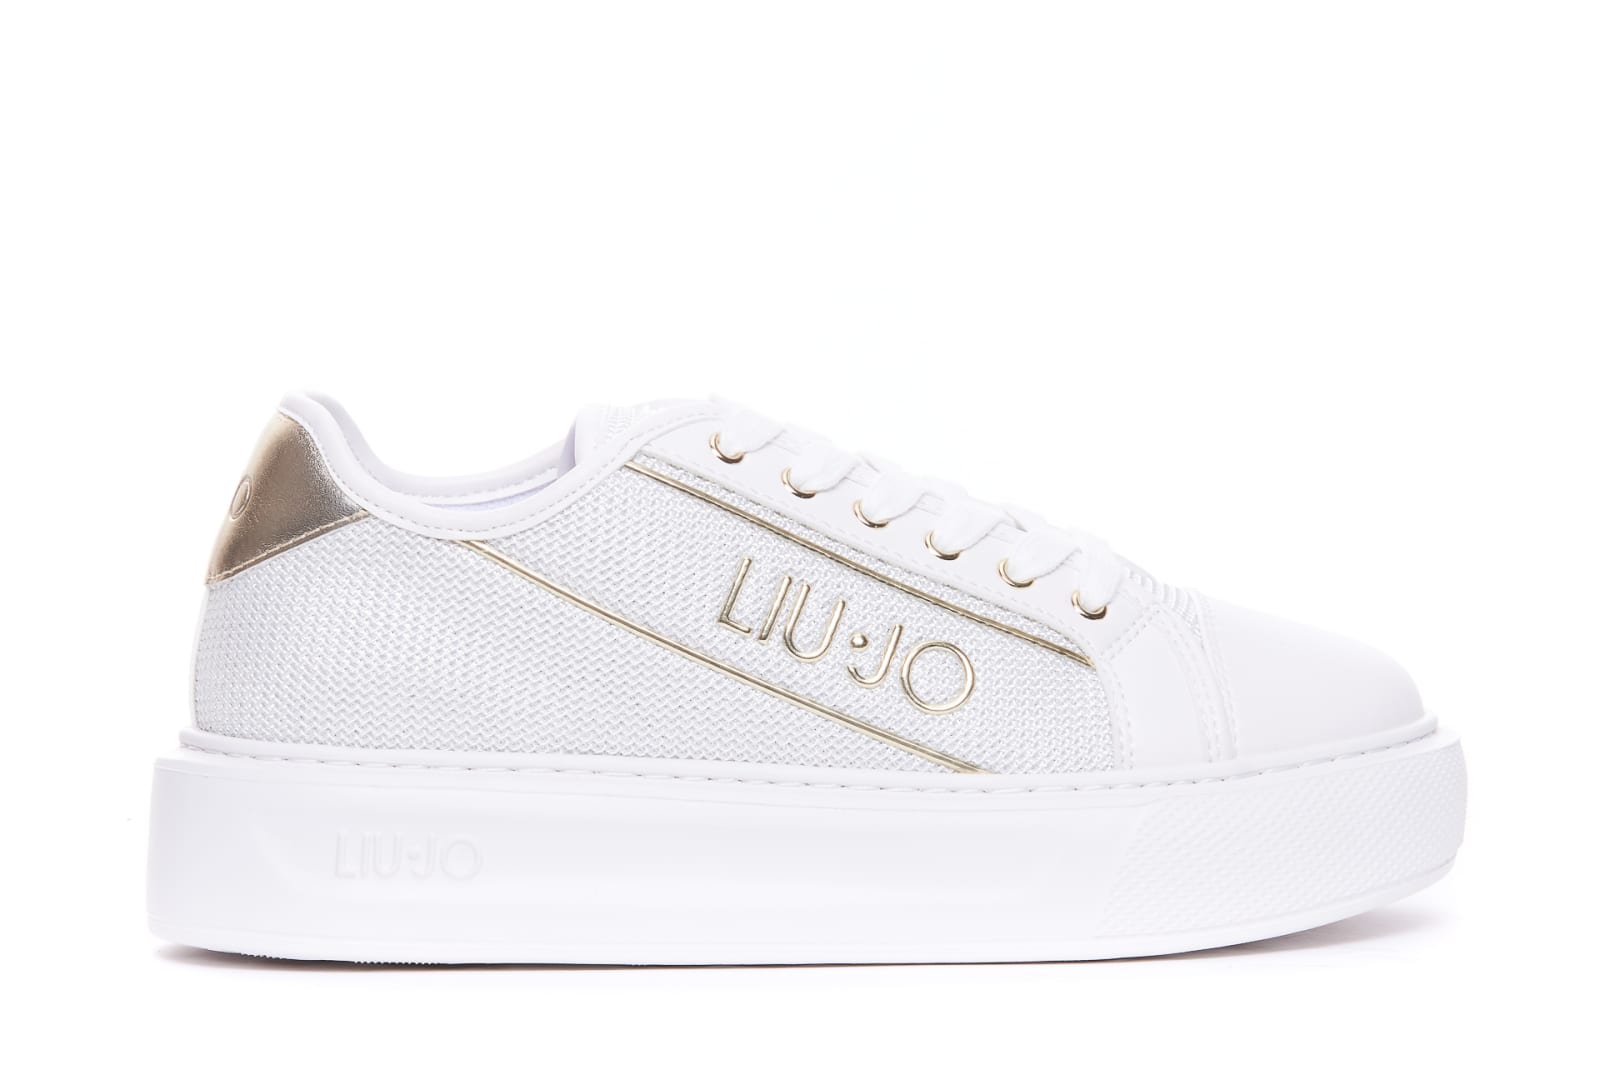 Liu •jo Kylie Sneakers In White